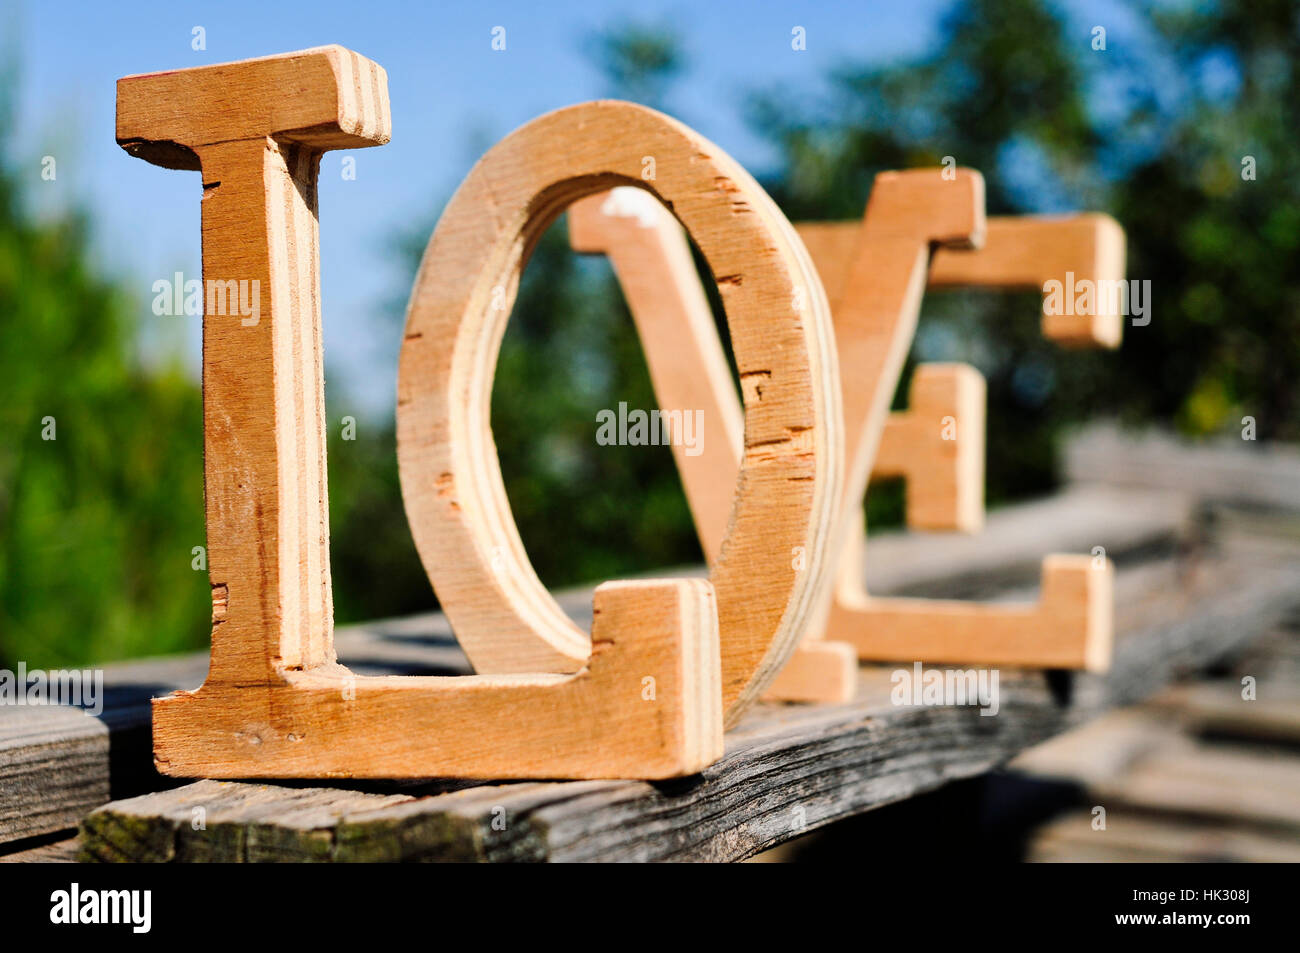 einige dreidimensionale Holzbuchstaben bilden das Wort Liebe, platziert auf einer verwitterten Holzoberfläche im Außenbereich, mit Bäumen im Hintergrund Stockfoto